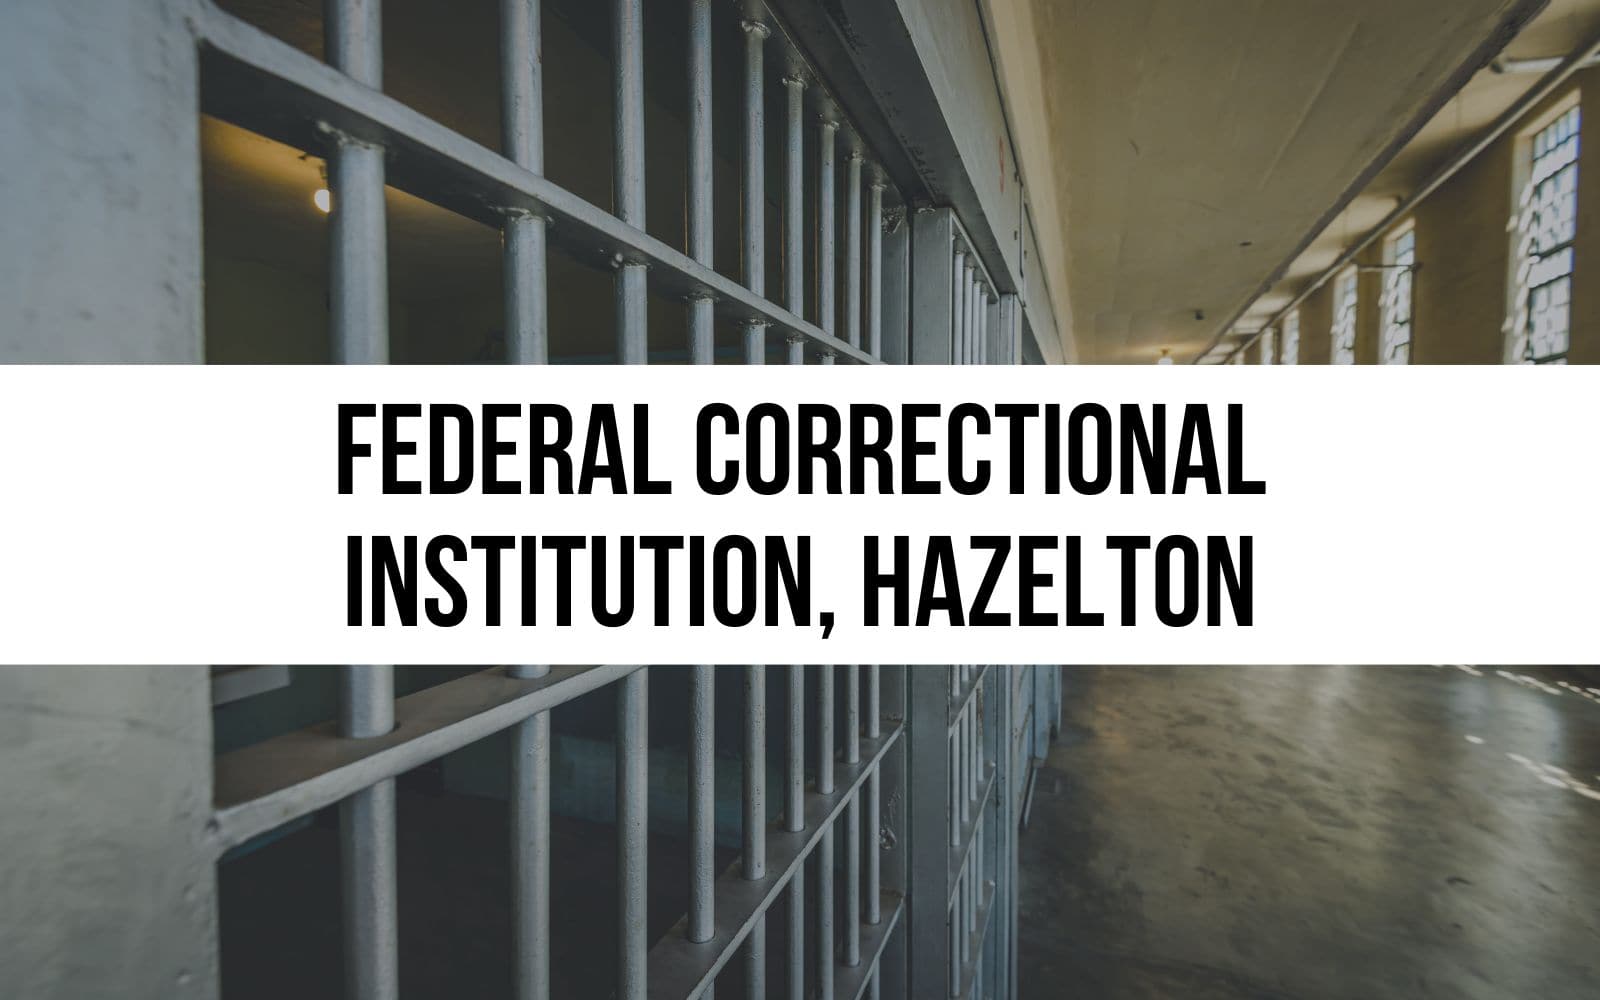 Federal Correctional Institution, Hazelton